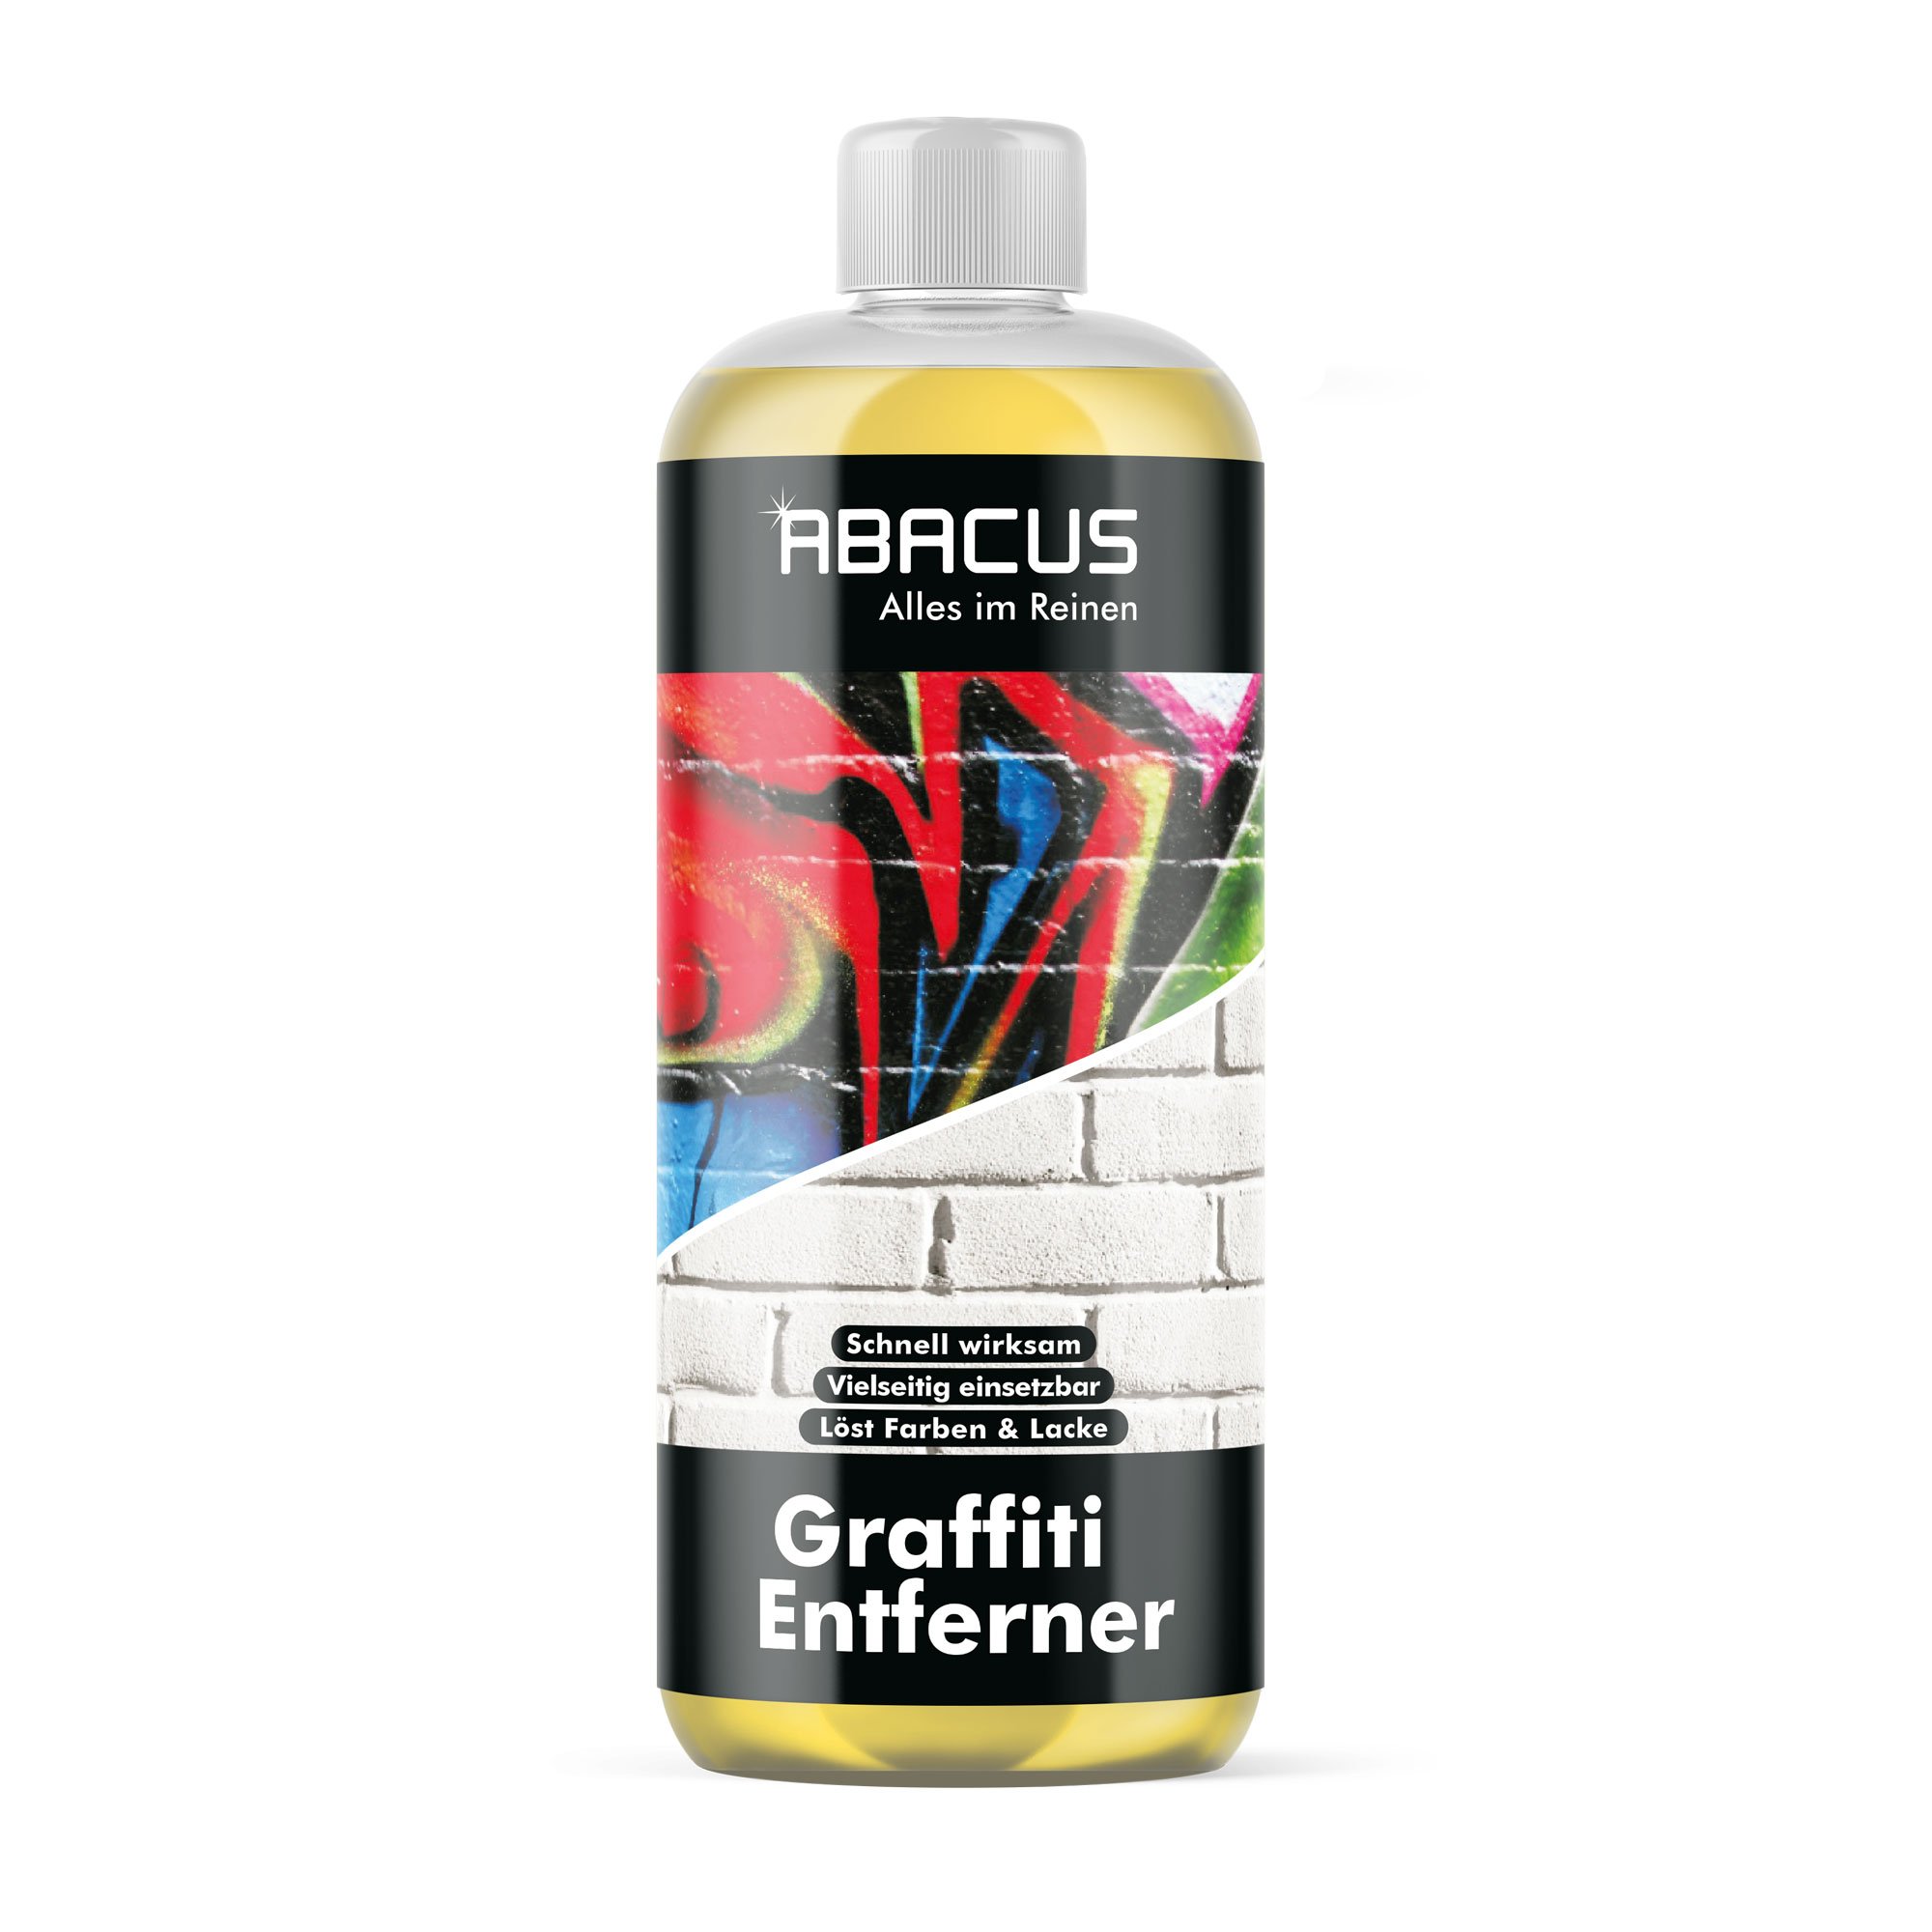 Graffitientferner, Graffitilöser, Farblöser 1000 ml